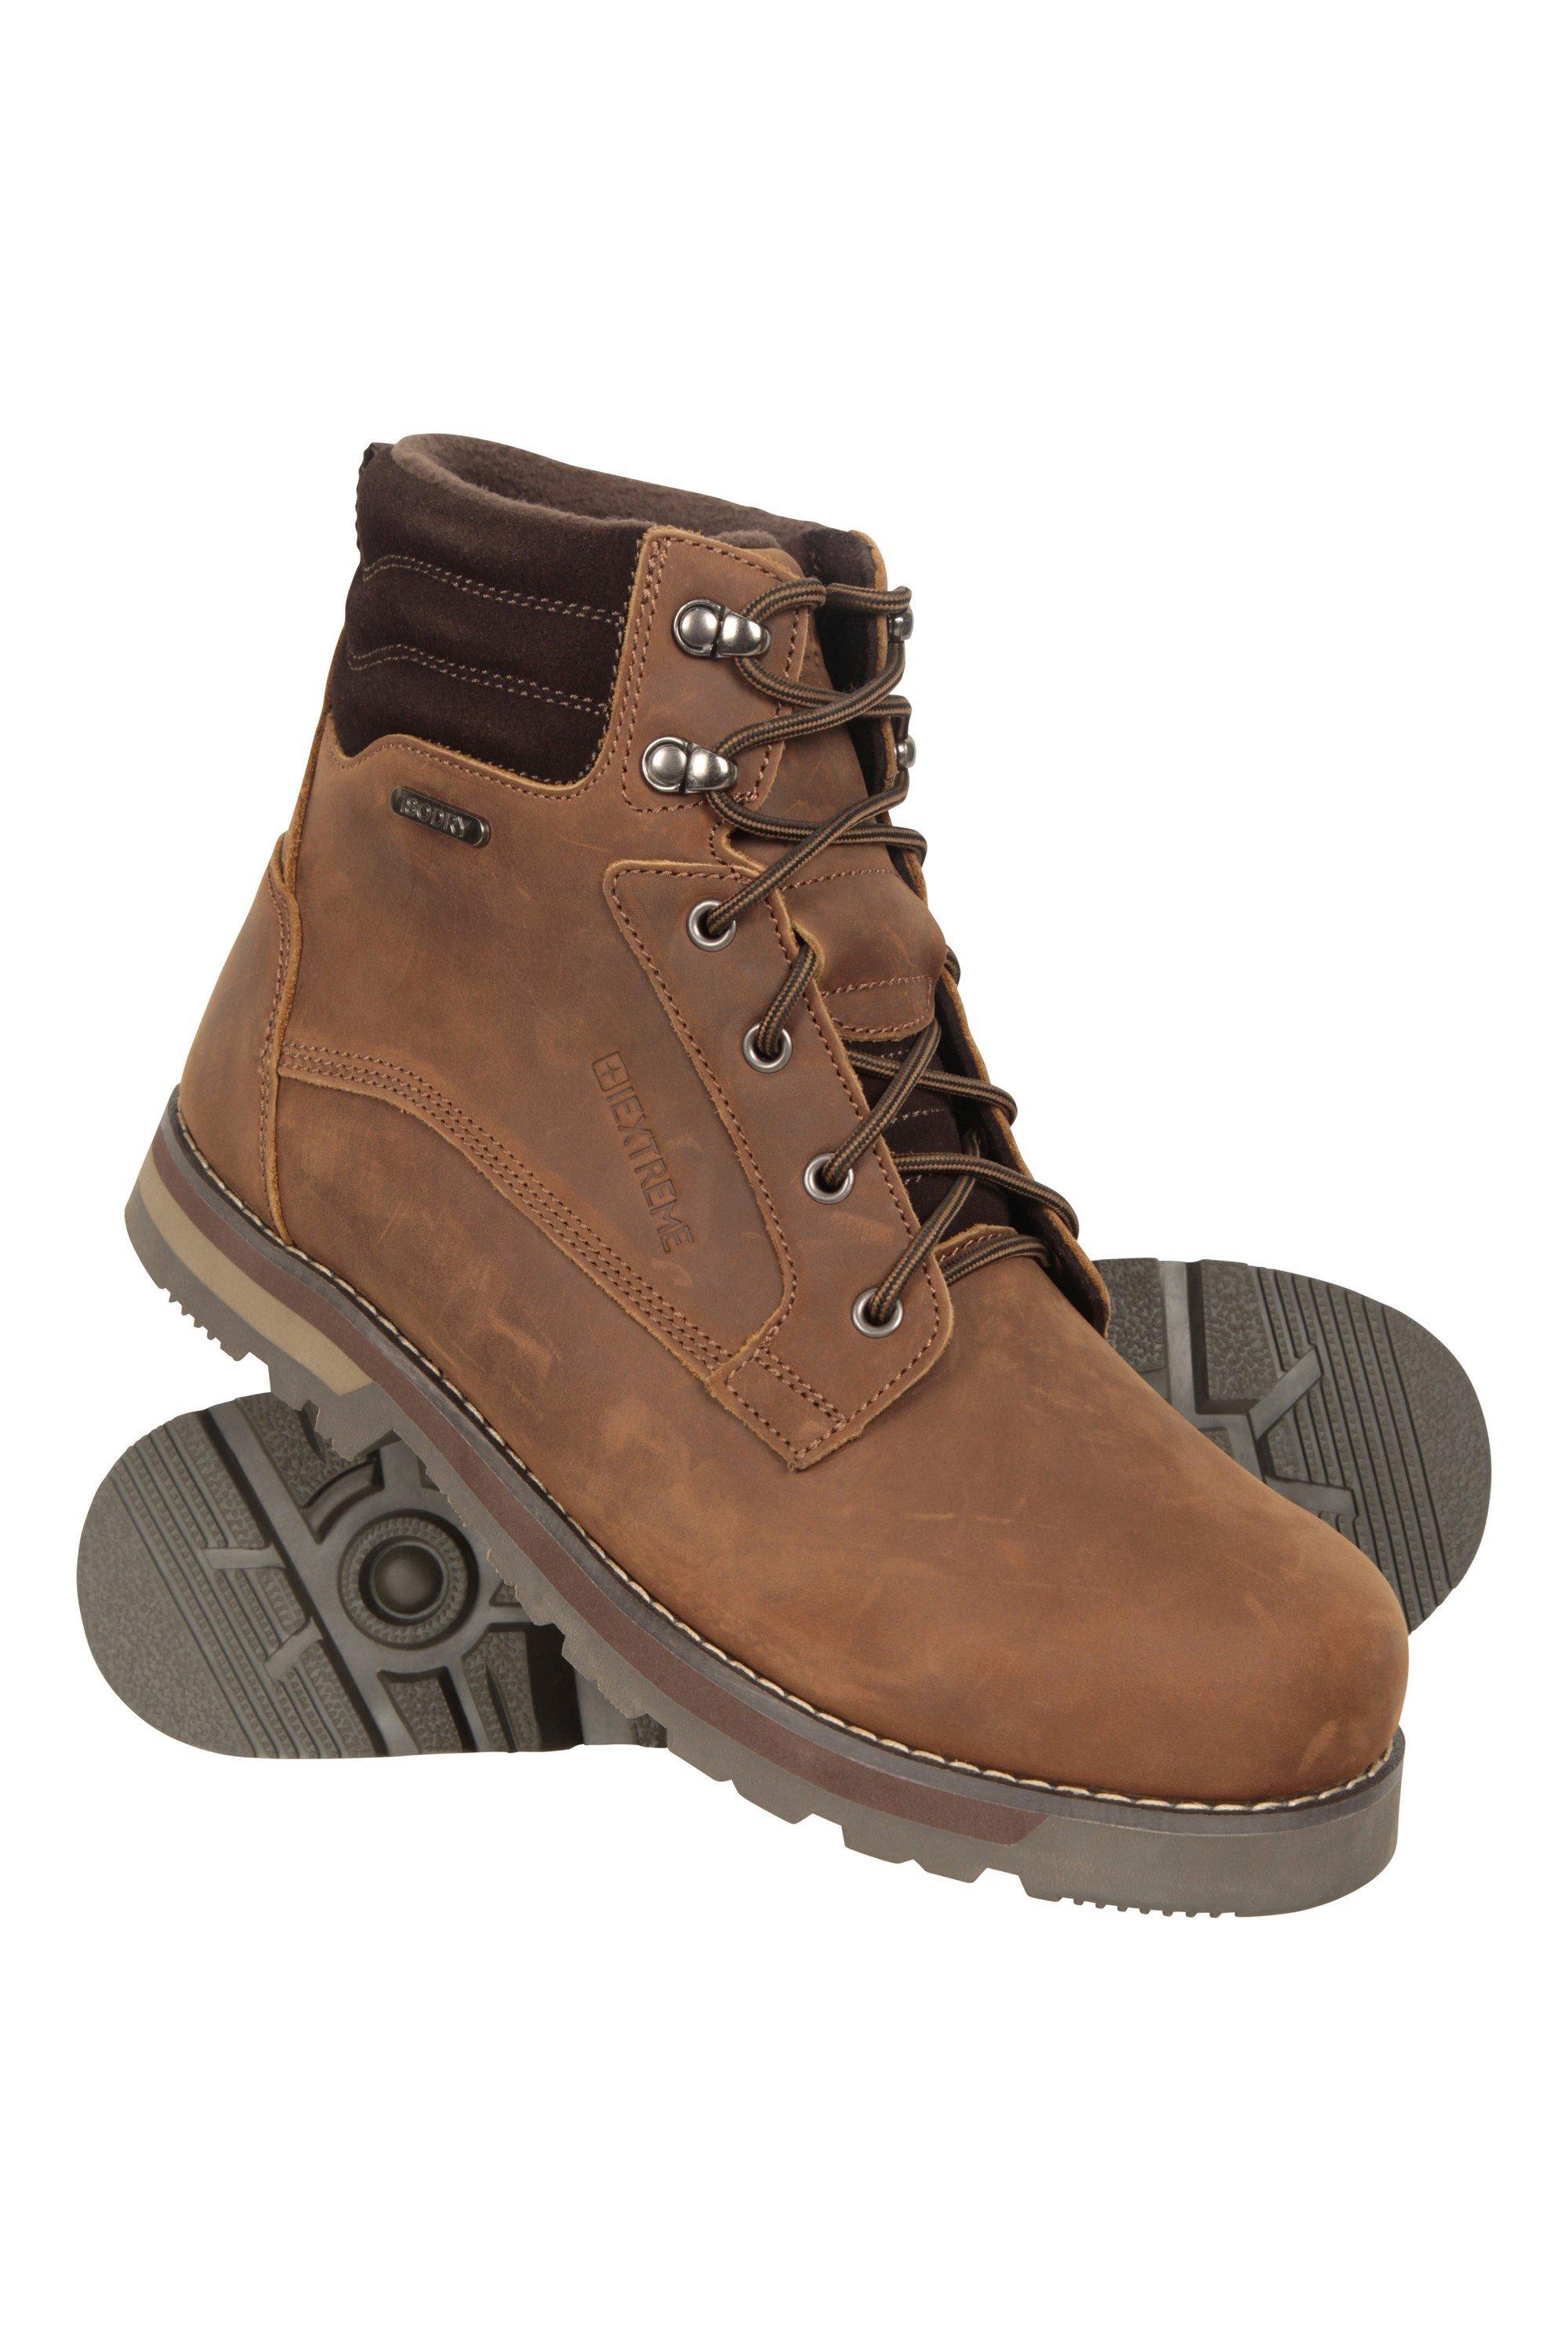 цена Makalu Extreme Водонепроницаемые кожаные ботинки на подкладке Mountain Warehouse, коричневый